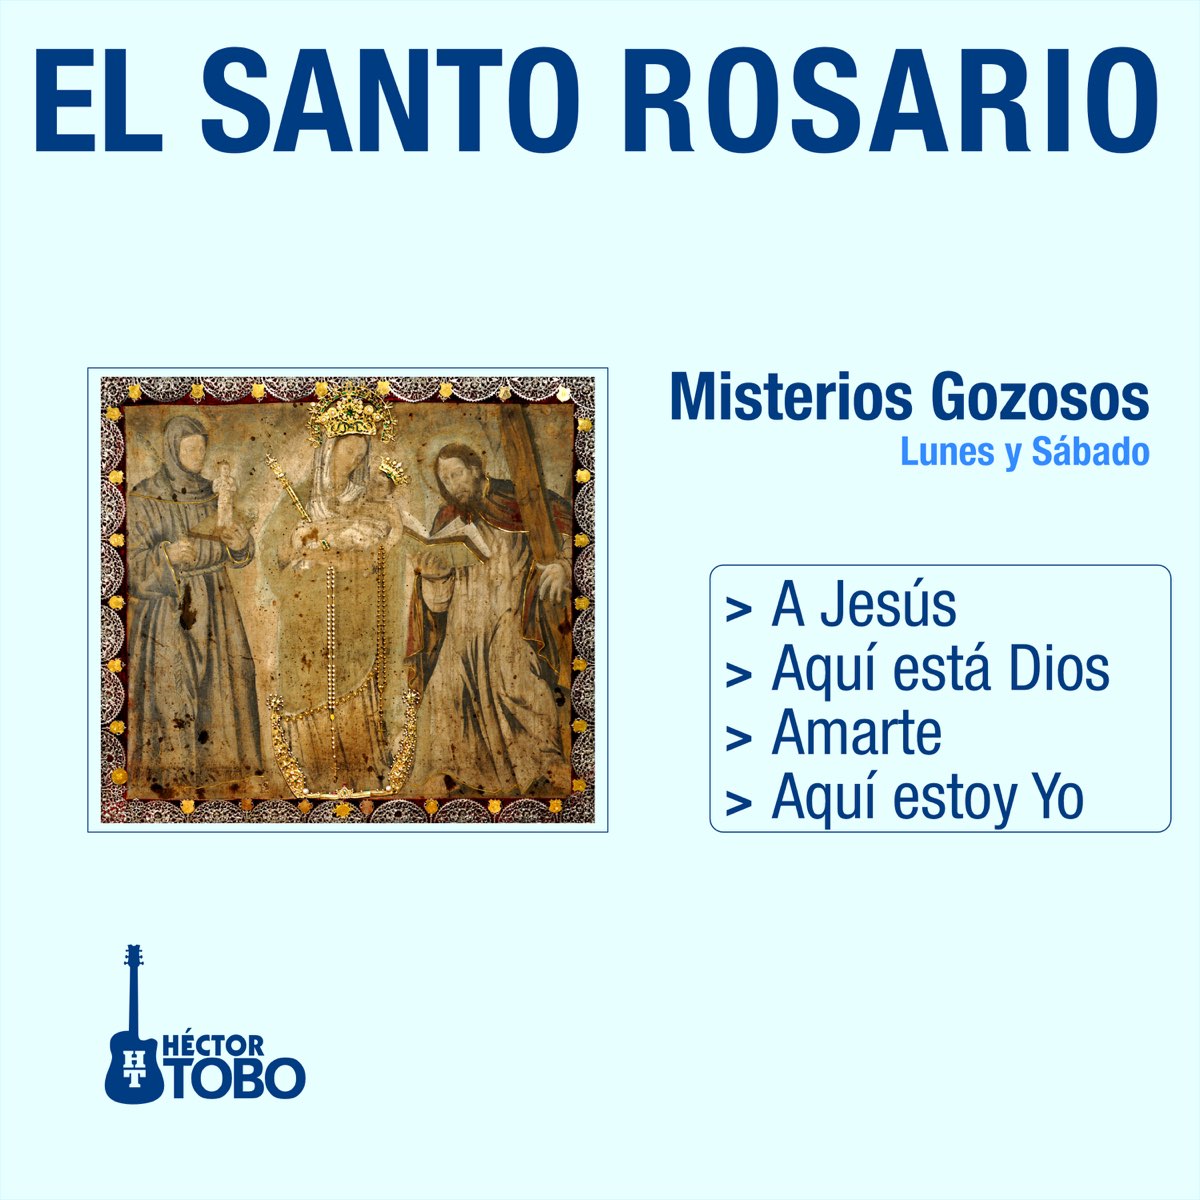 El Santo Rosario - Misterios Gozosos Lunes y Sábado (A Jesús, Aquí Está  Dios, Amarte, Aquí Estoy Yo) by Héctor Tobo on Apple Music